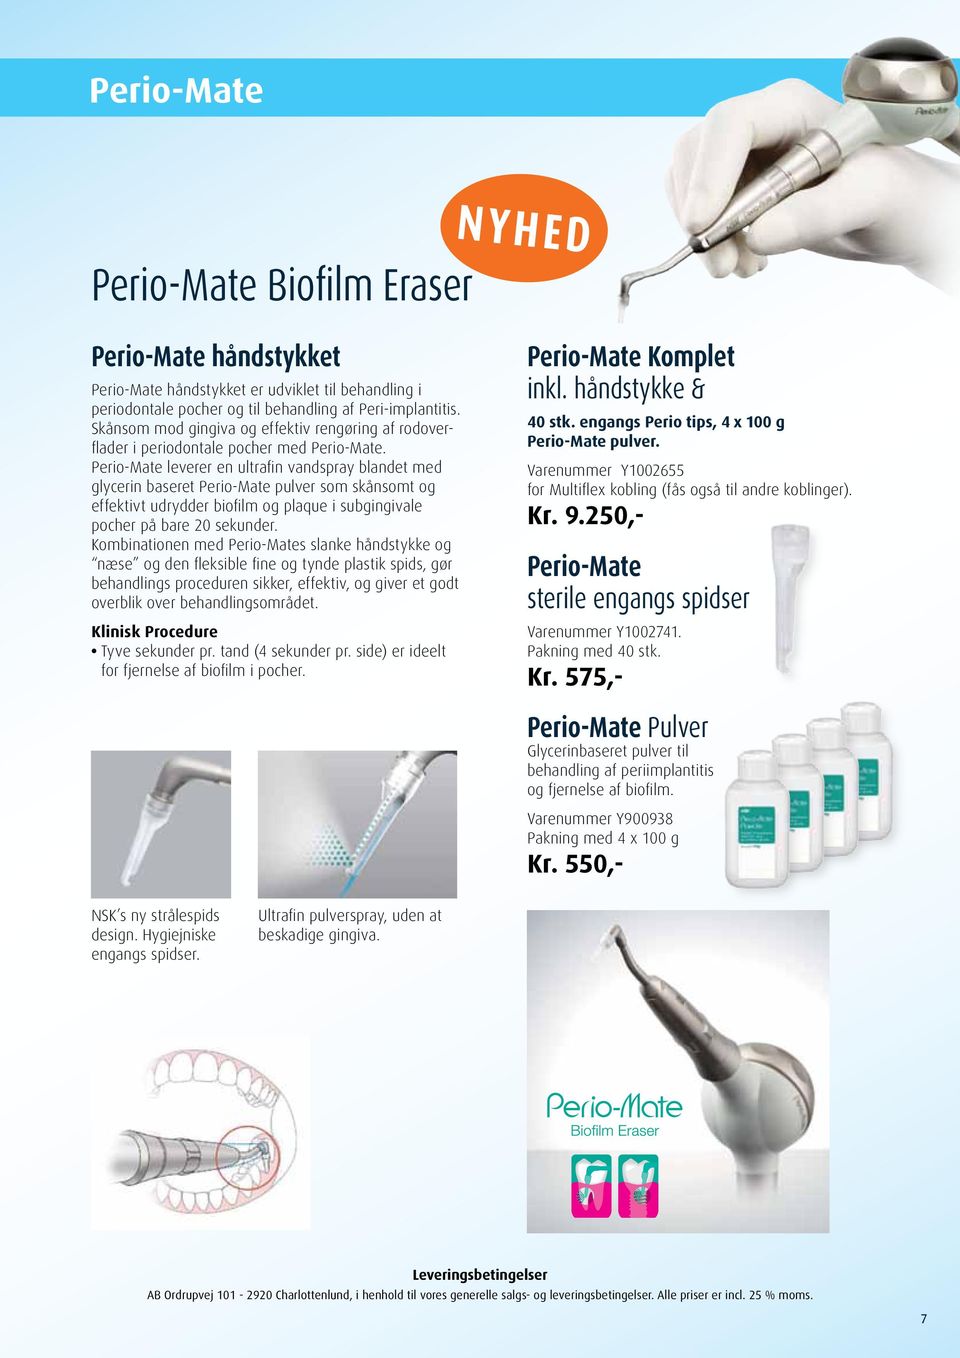 Perio-Mate leverer en ultrafin vandspray blandet med glycerin baseret Perio-Mate pulver som skånsomt og effektivt udrydder biofilm og plaque i subgingivale pocher på bare 20 sekunder.